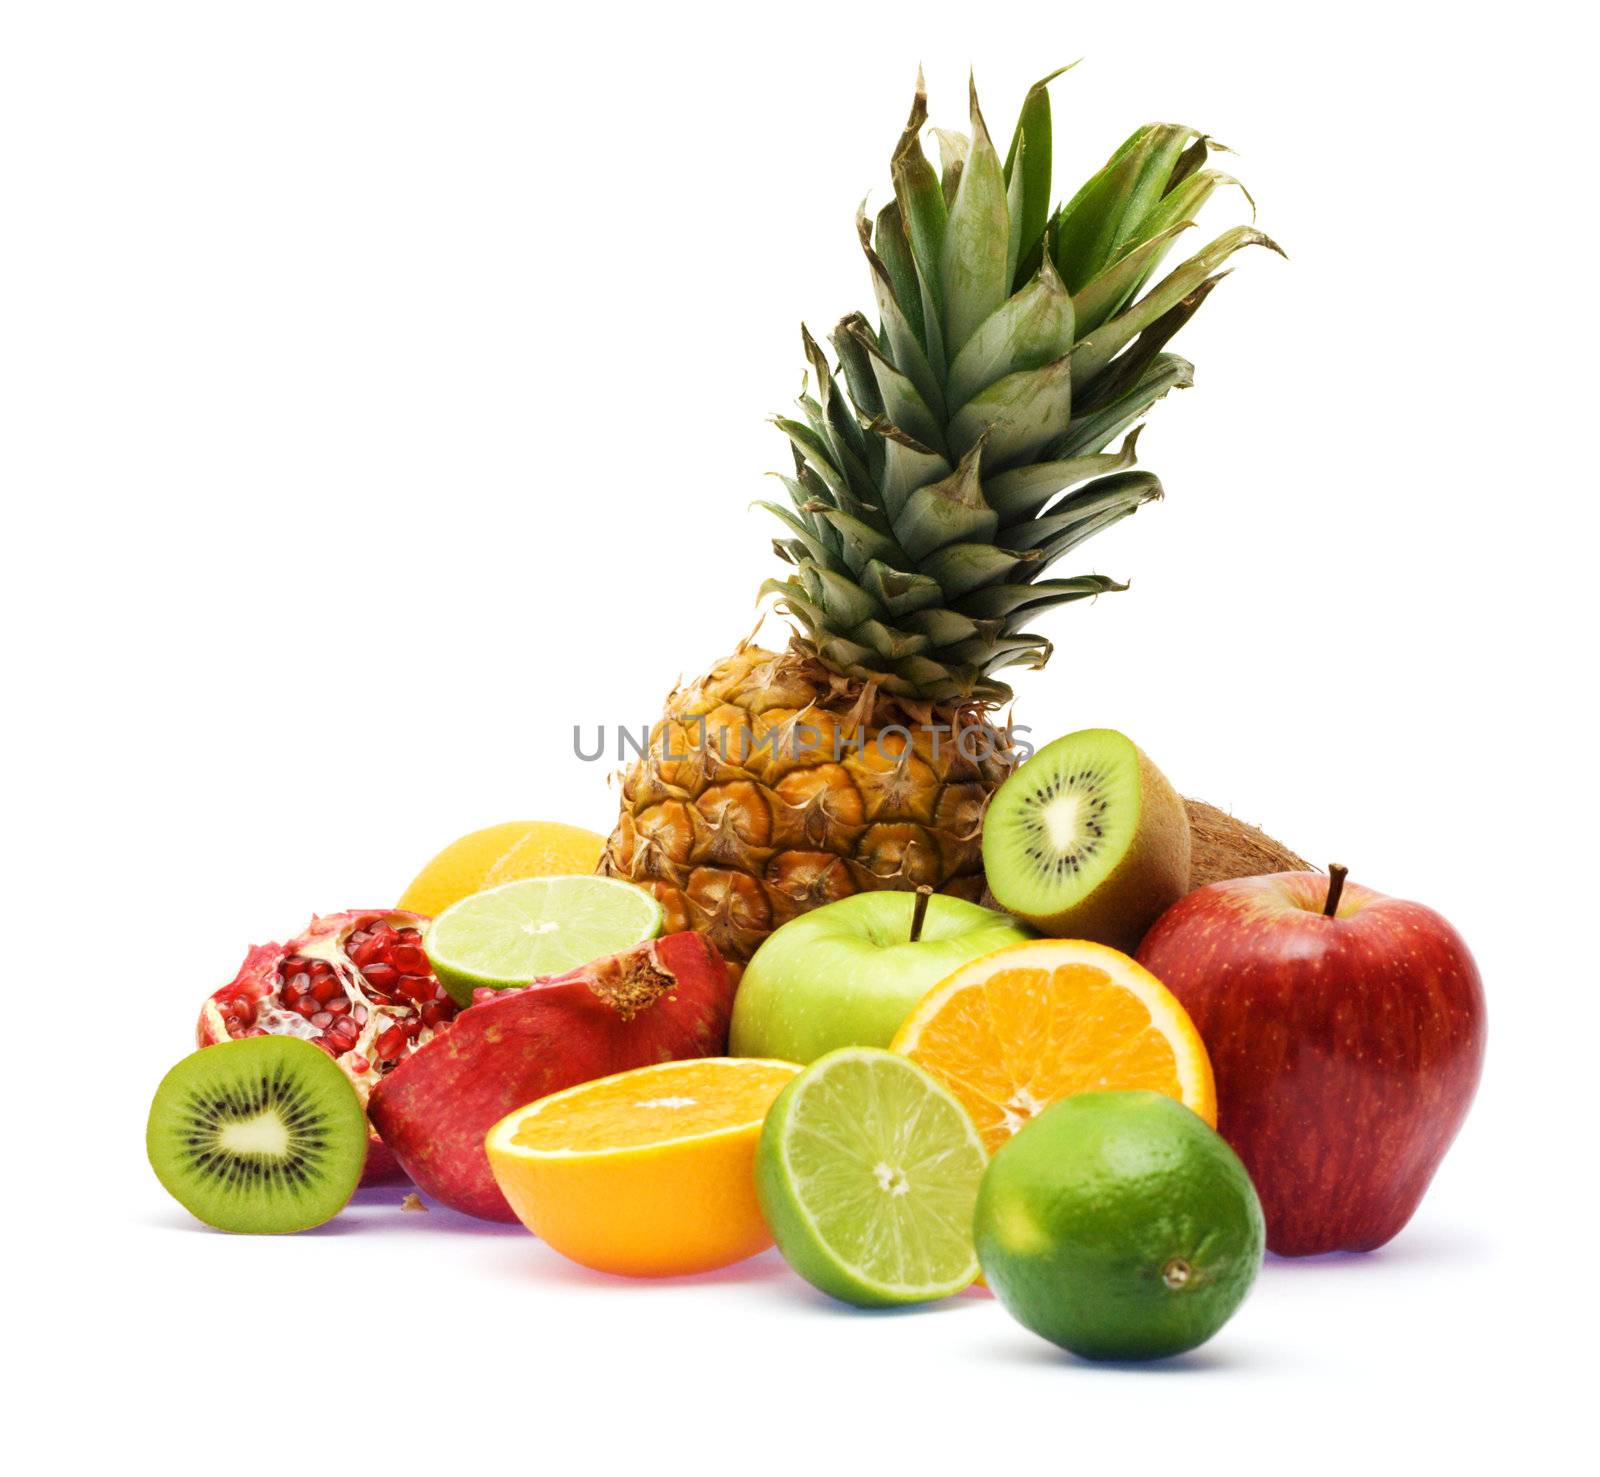 Group of fresh fruits over white background by Gdolgikh